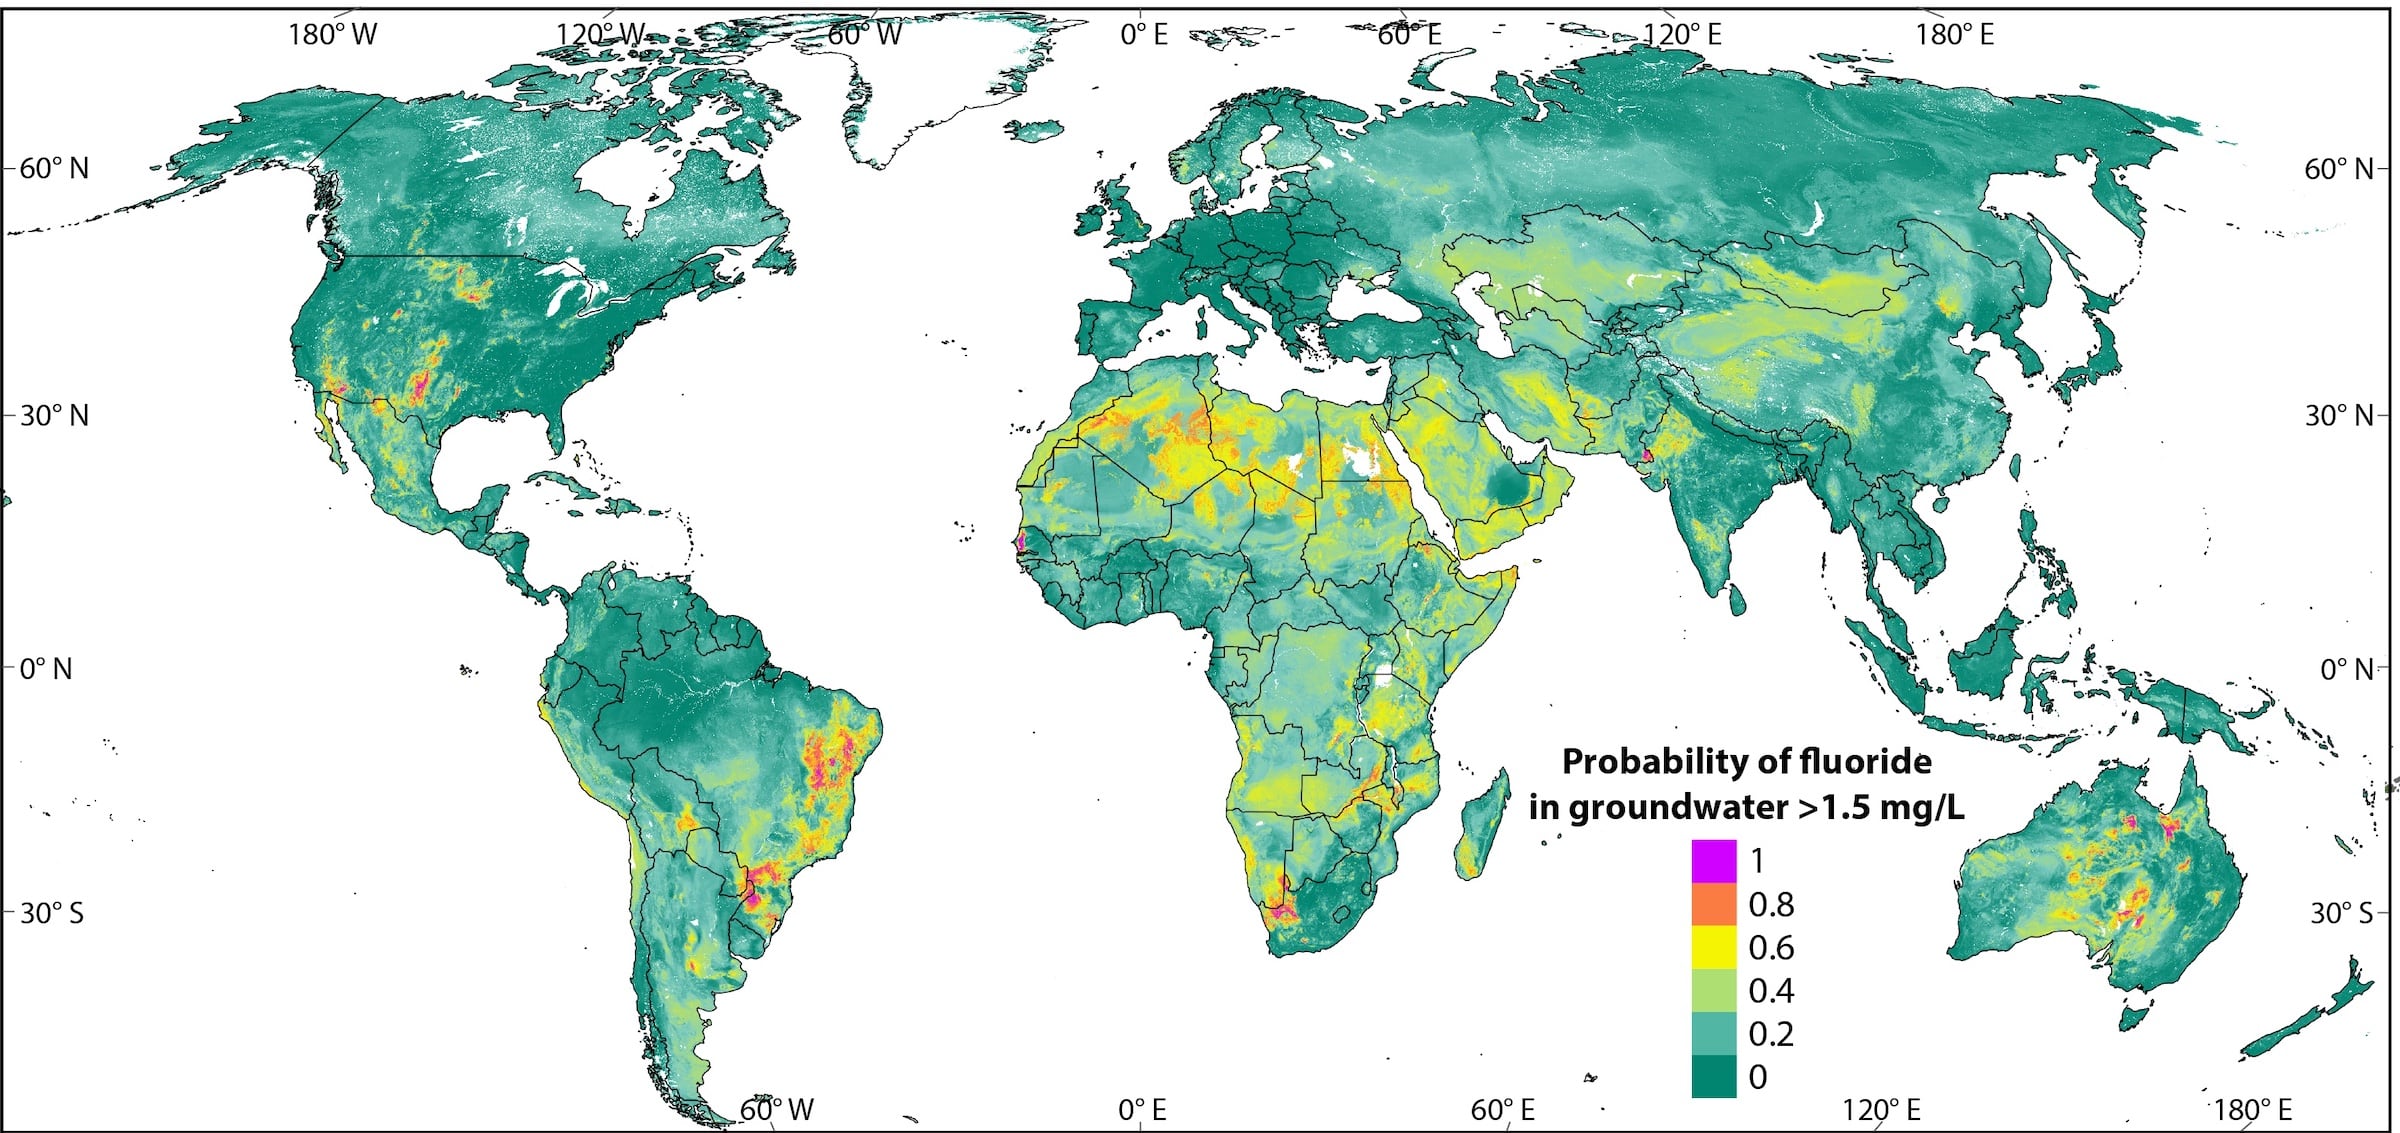 Globale Karte der Fluoridkonzentration im Grundwasser | Karte: Joel Podgorski/Eawag